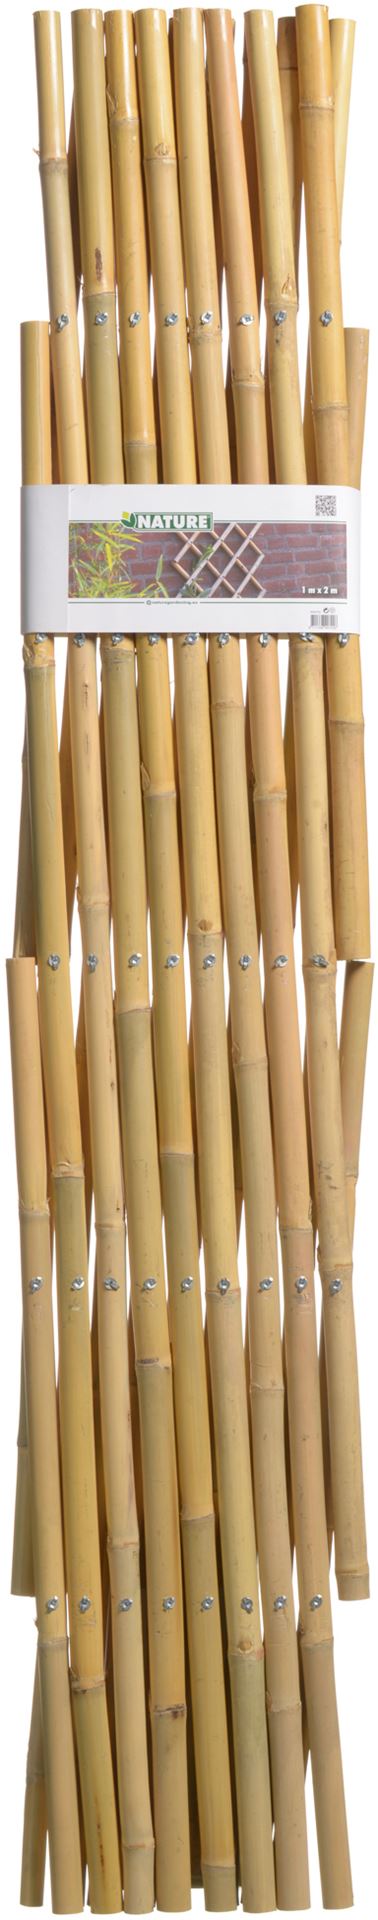 Bamboe-klimrek-100x200cm